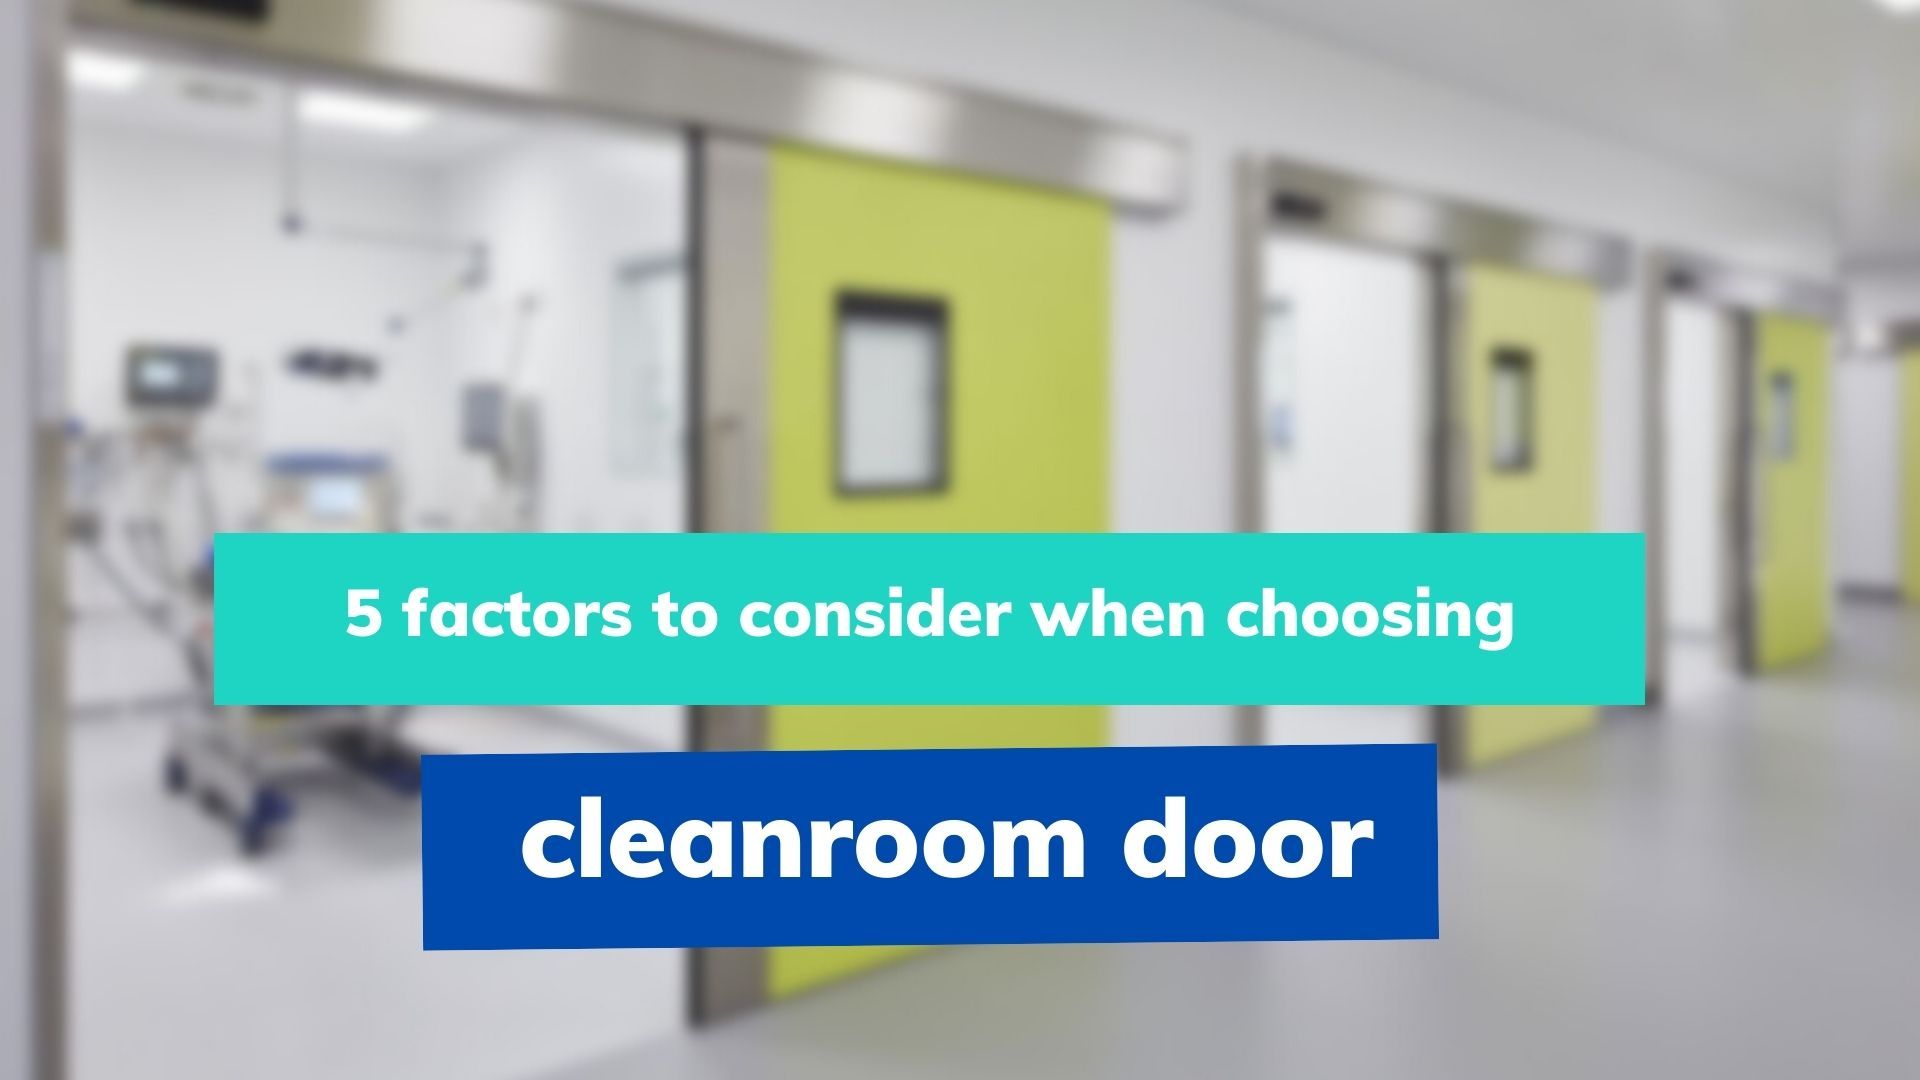 clean room door considerations